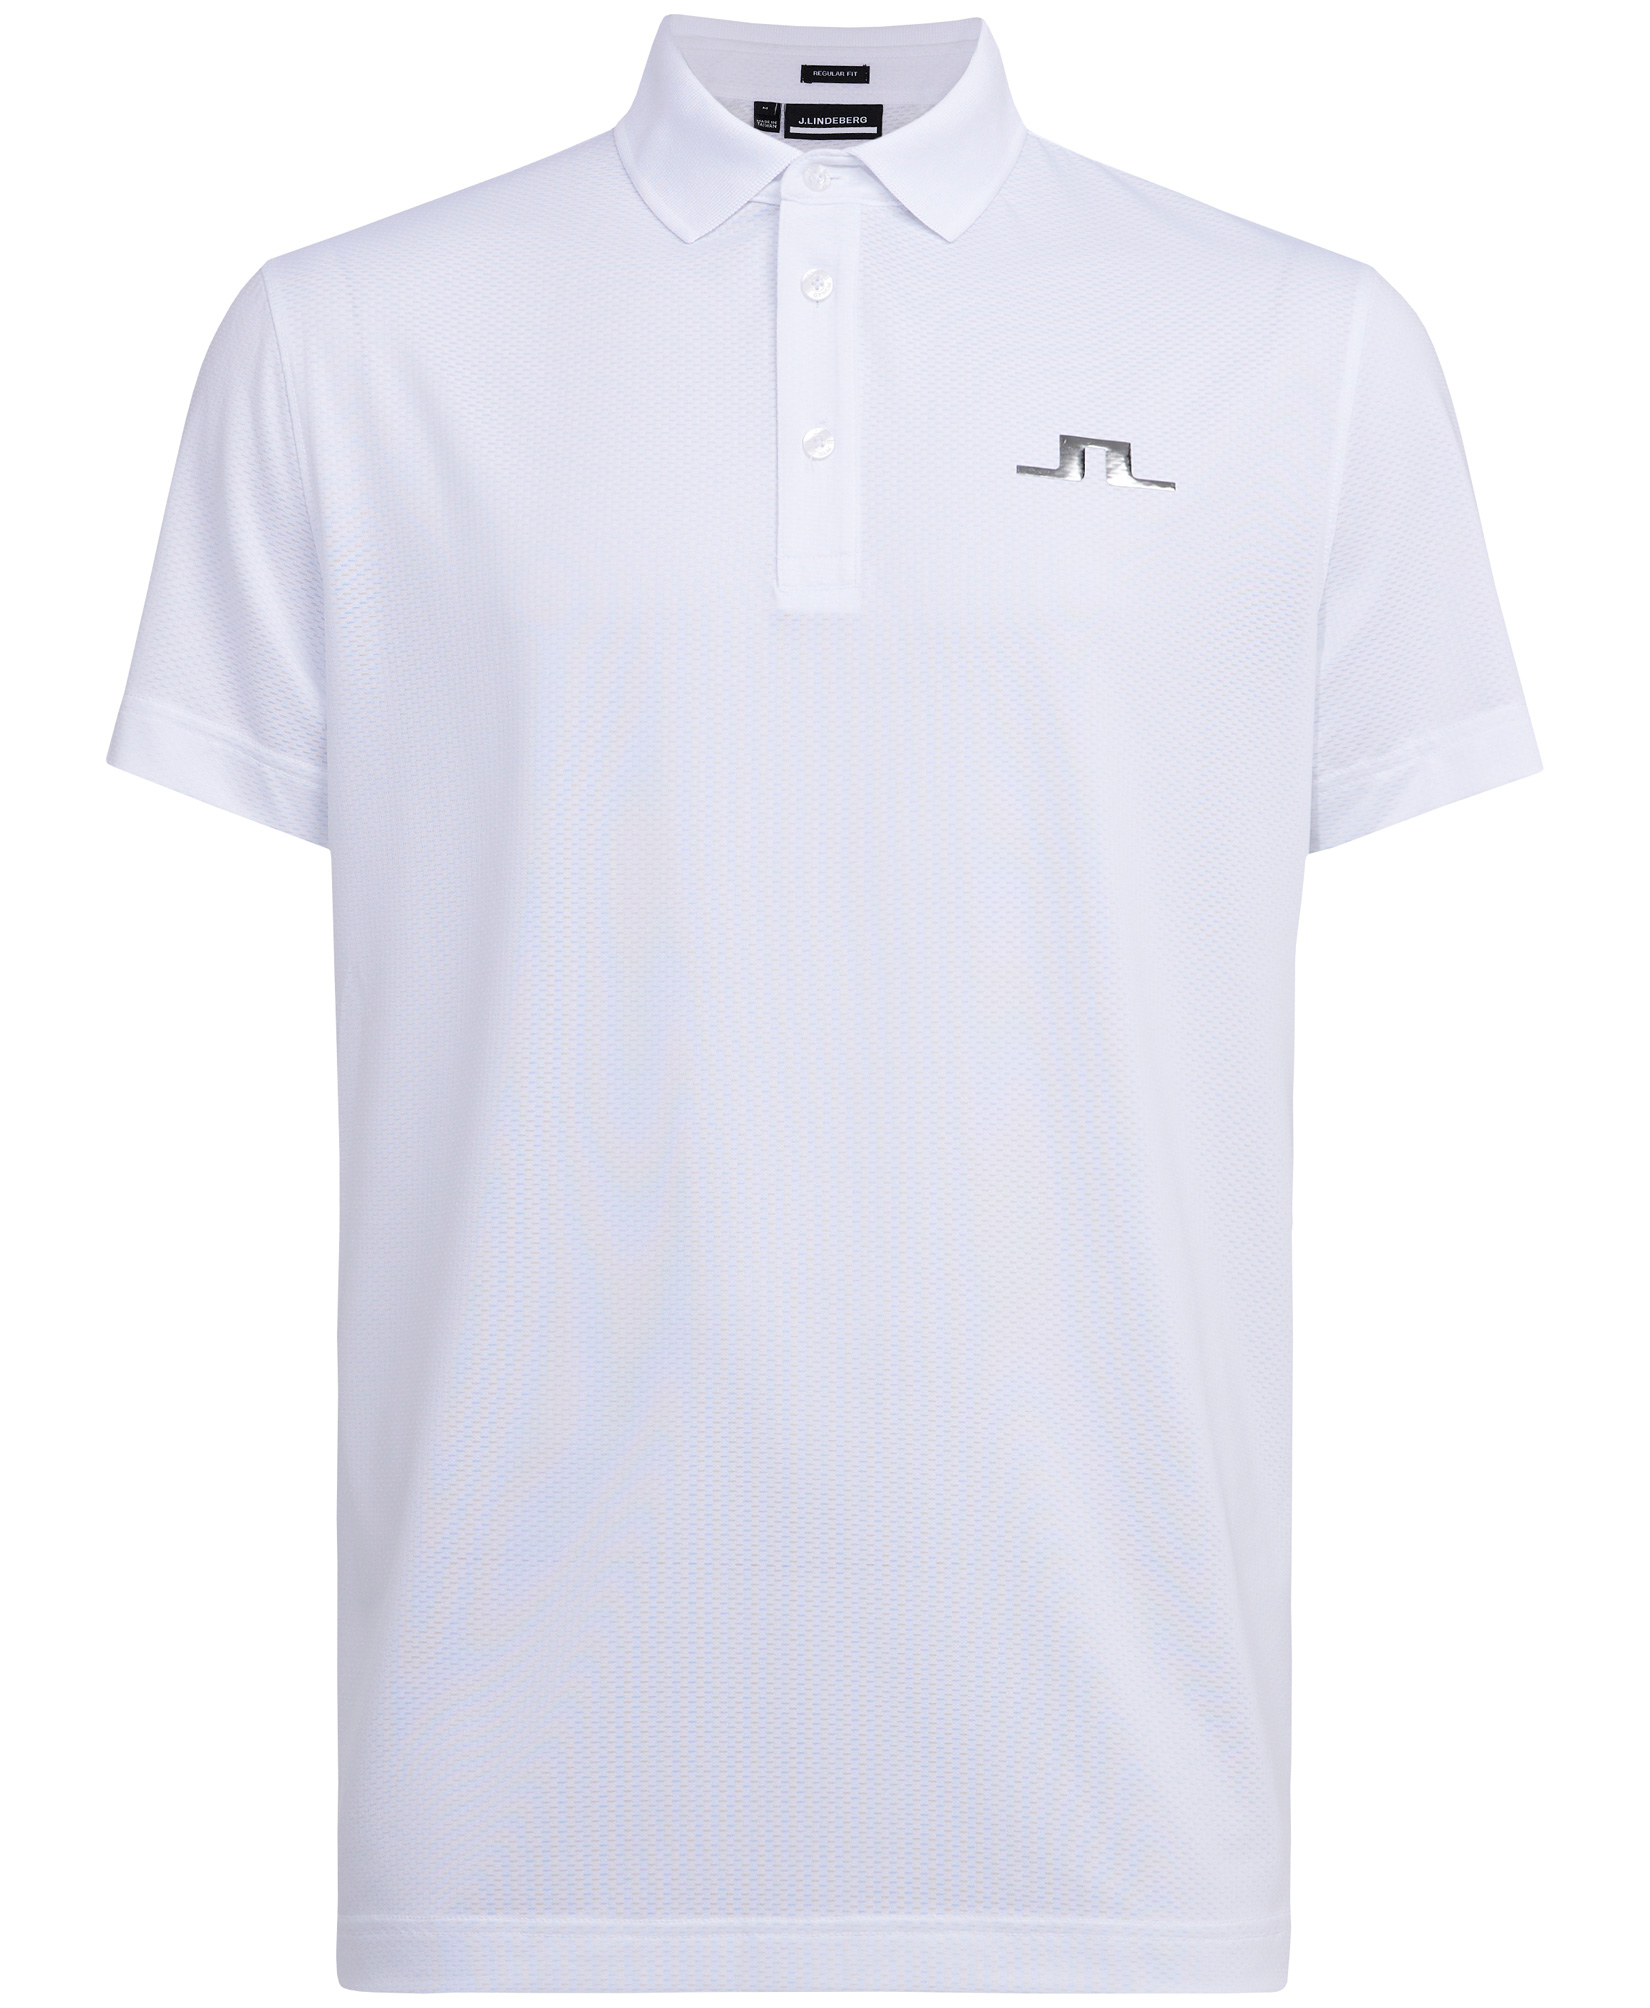 Grey KV monogram-print polo shirt, J.Lindeberg